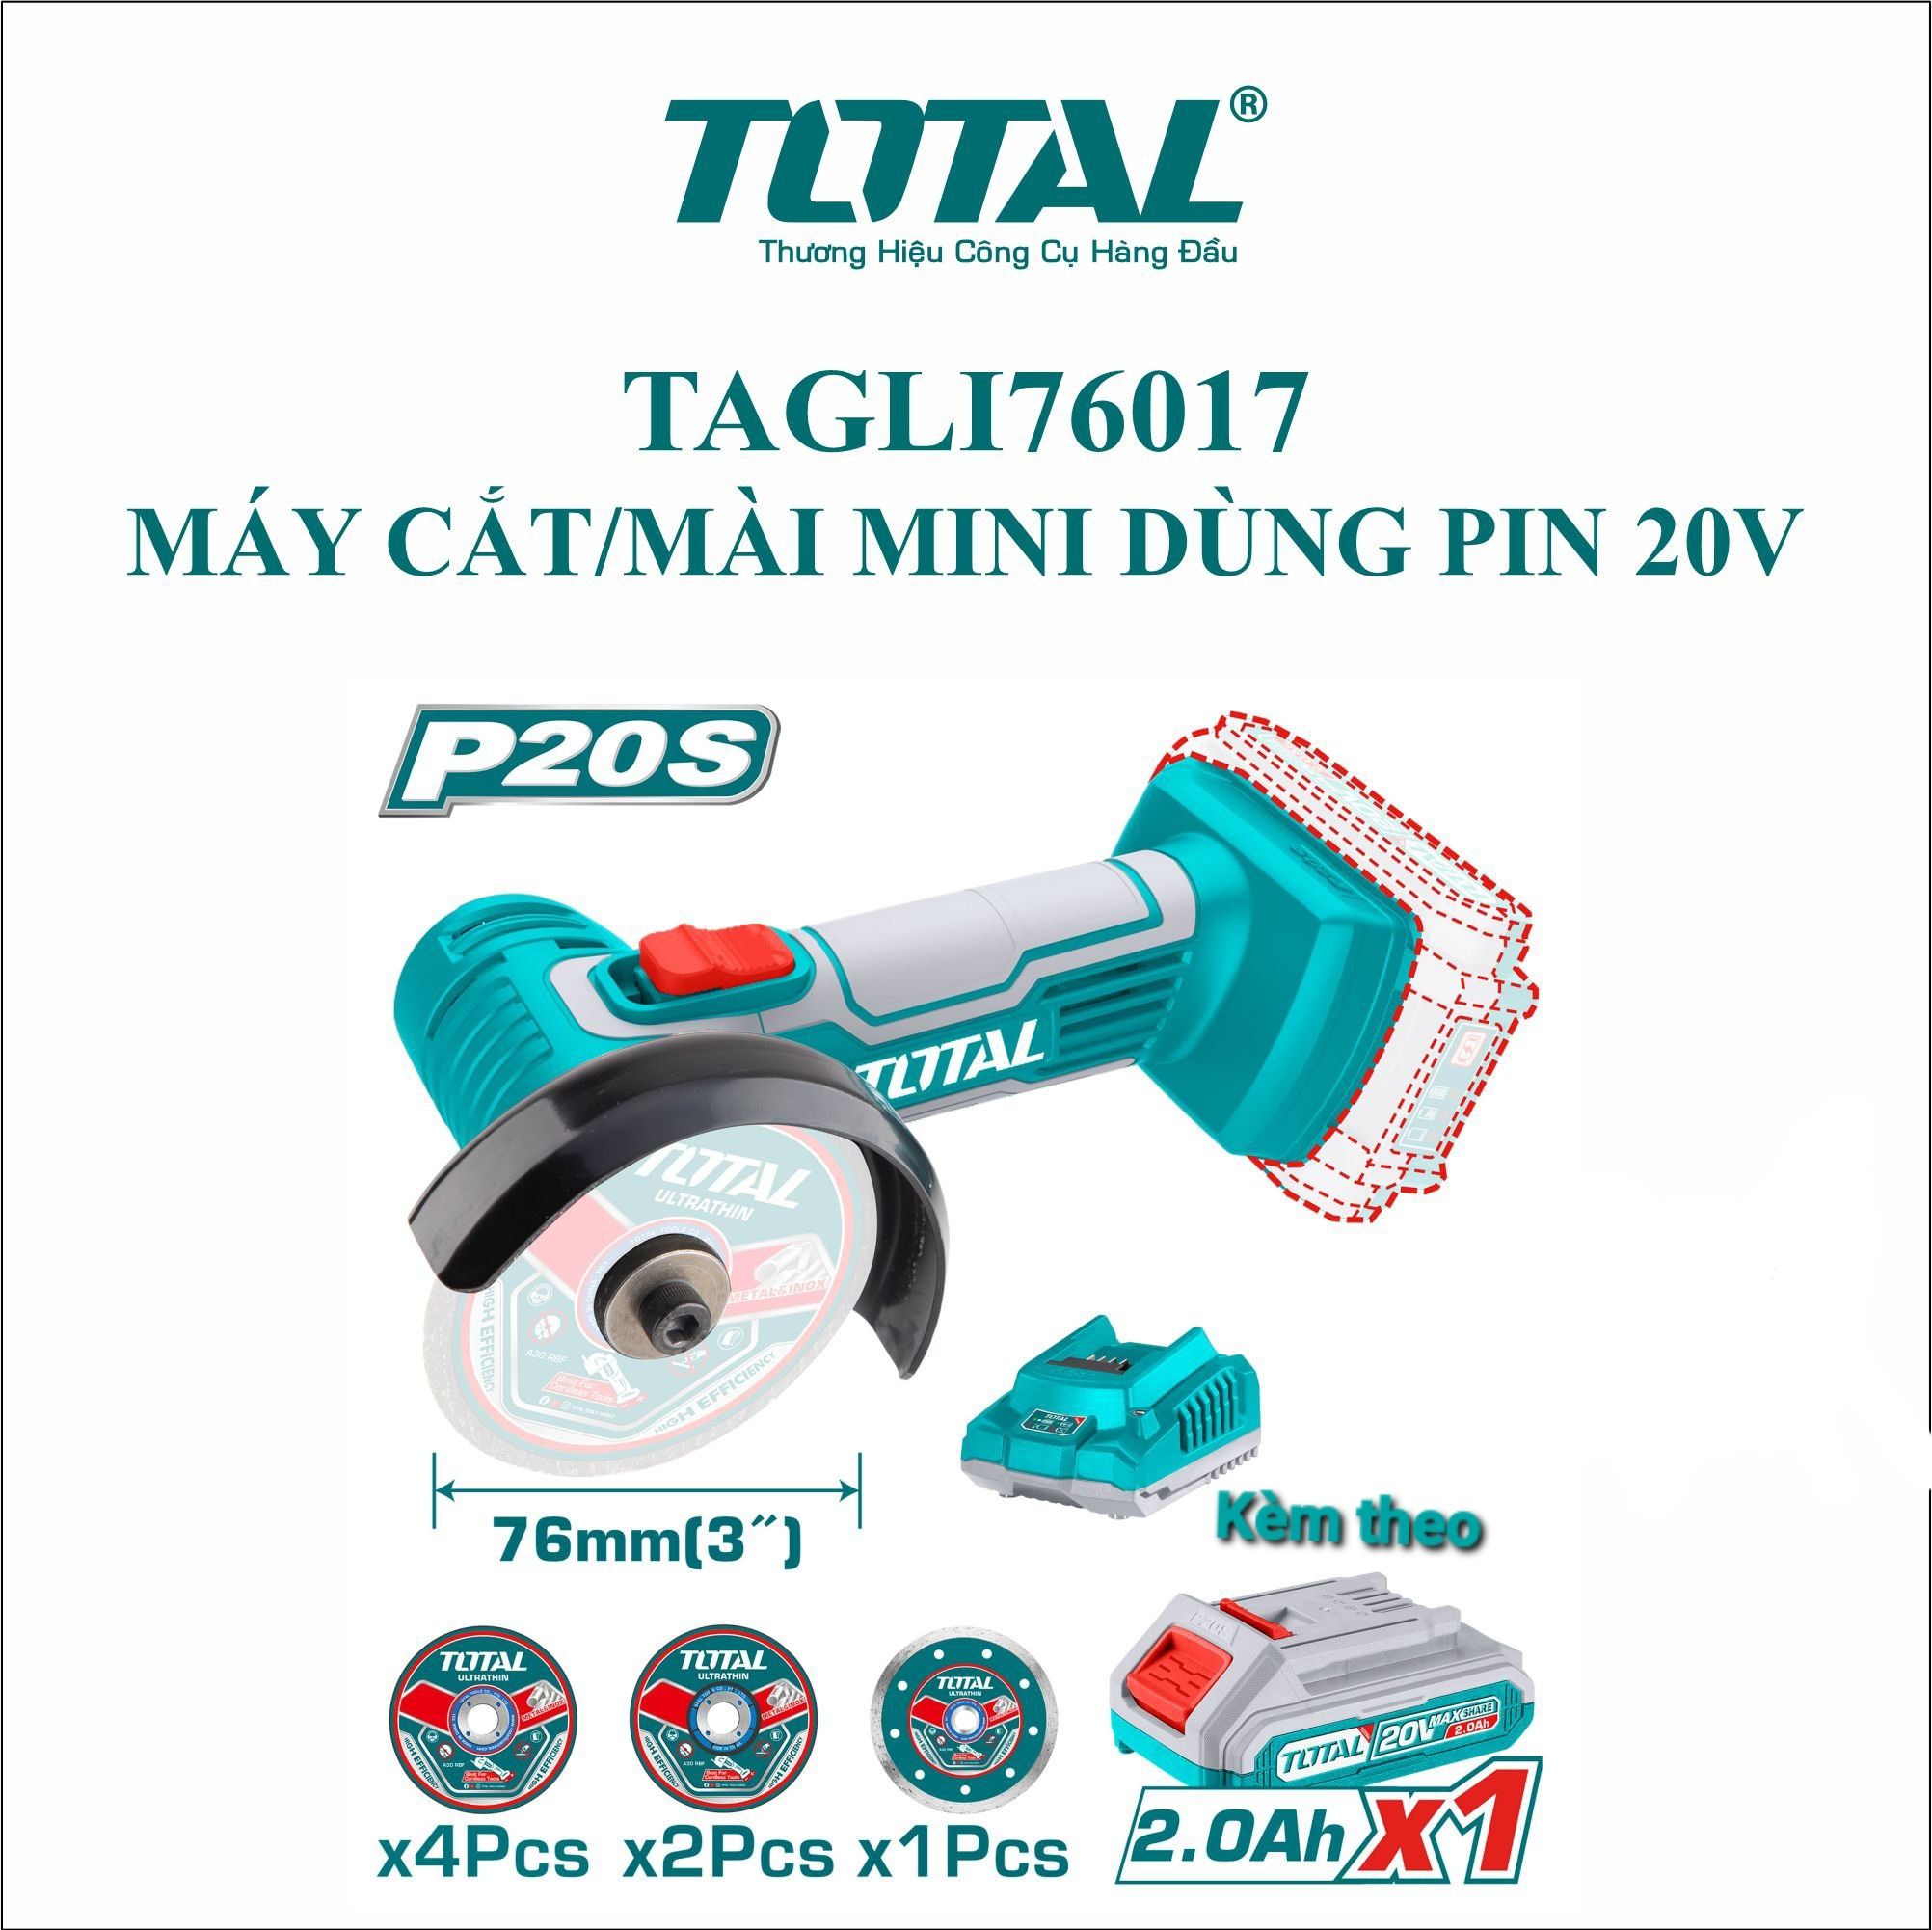  Máy cắt và mài mini dùng pin 20V Total TAGLI76017 